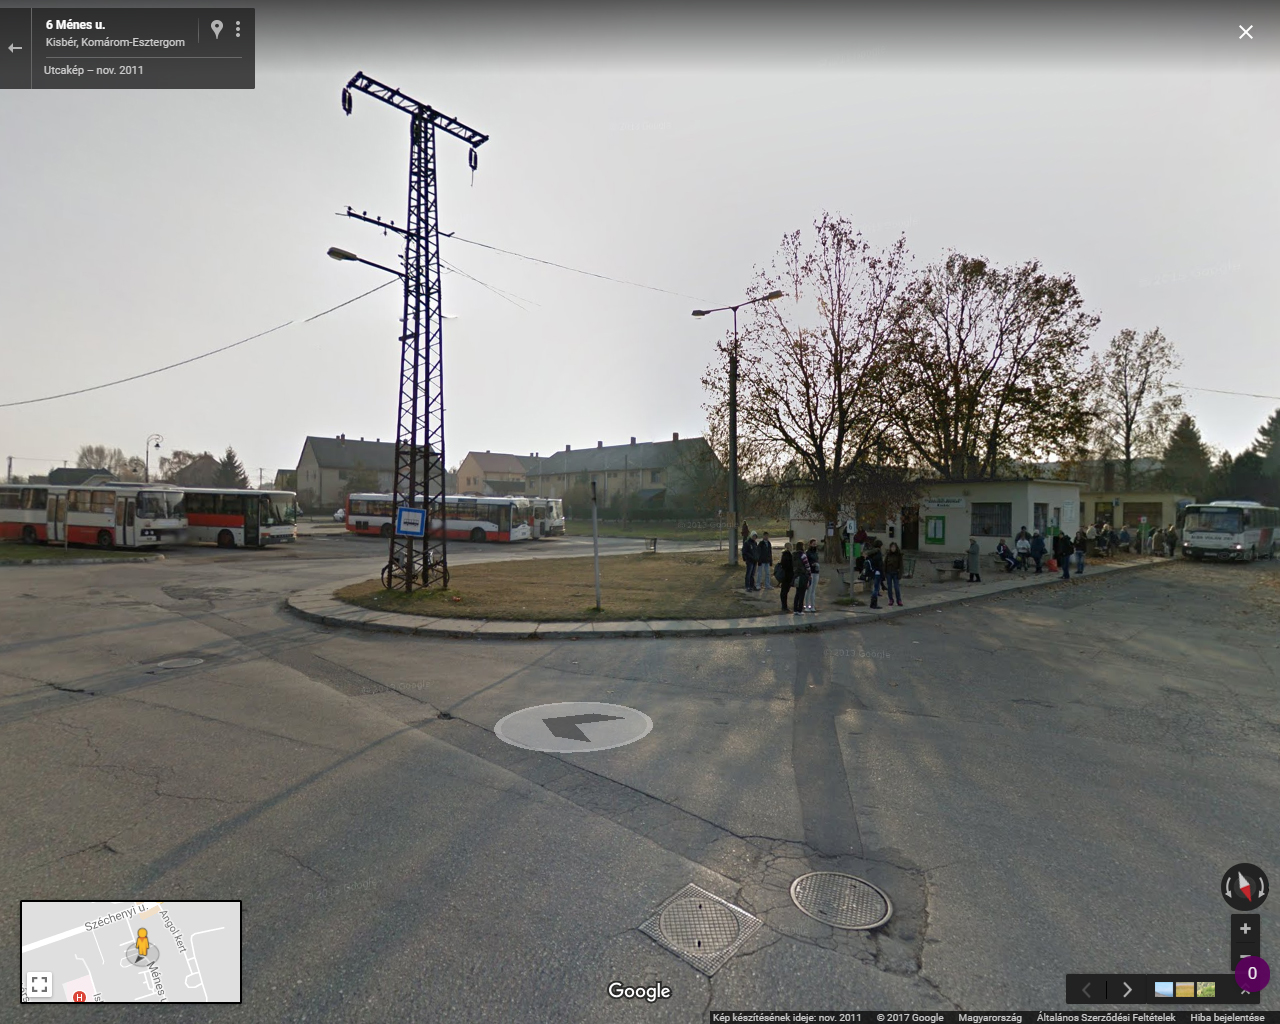 Hat éve, 2011 novemberében ilyennek látta a Street View a kisbéri buszállomást